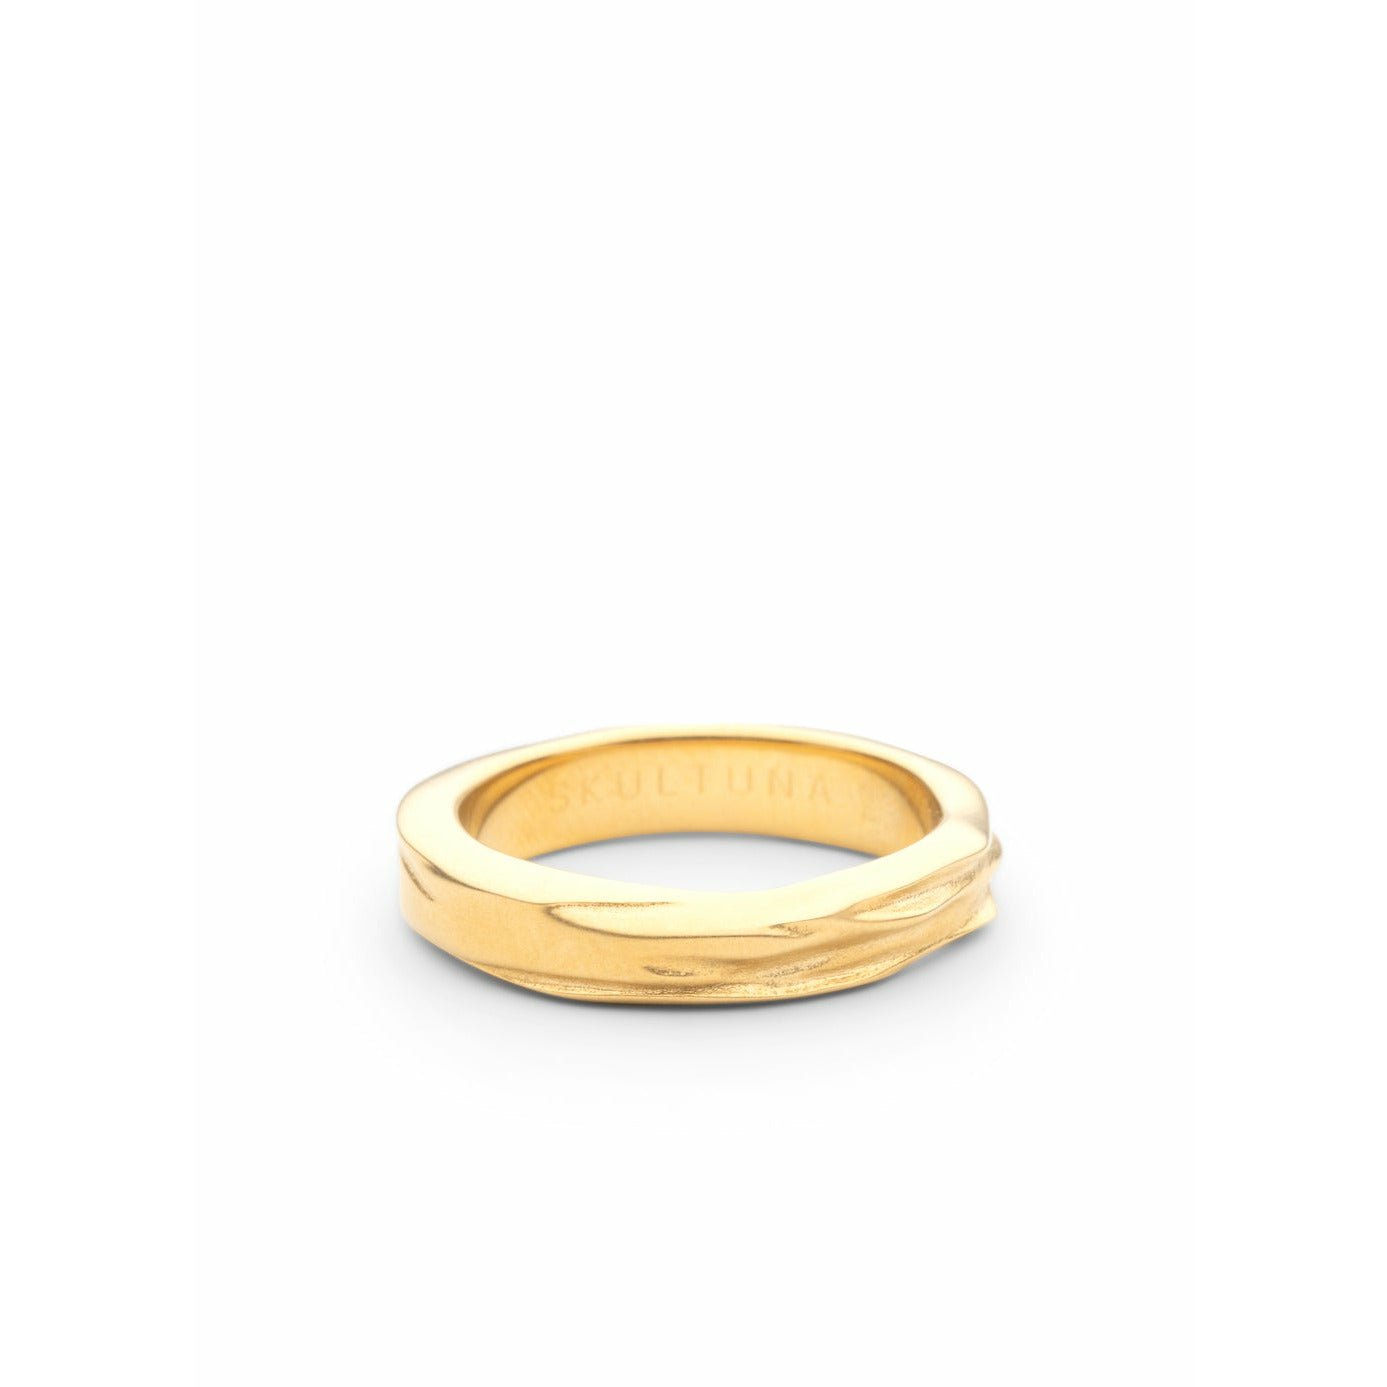 Skultuna Opque Objects anillo de oro Matt Matt, Ø1,6 cm